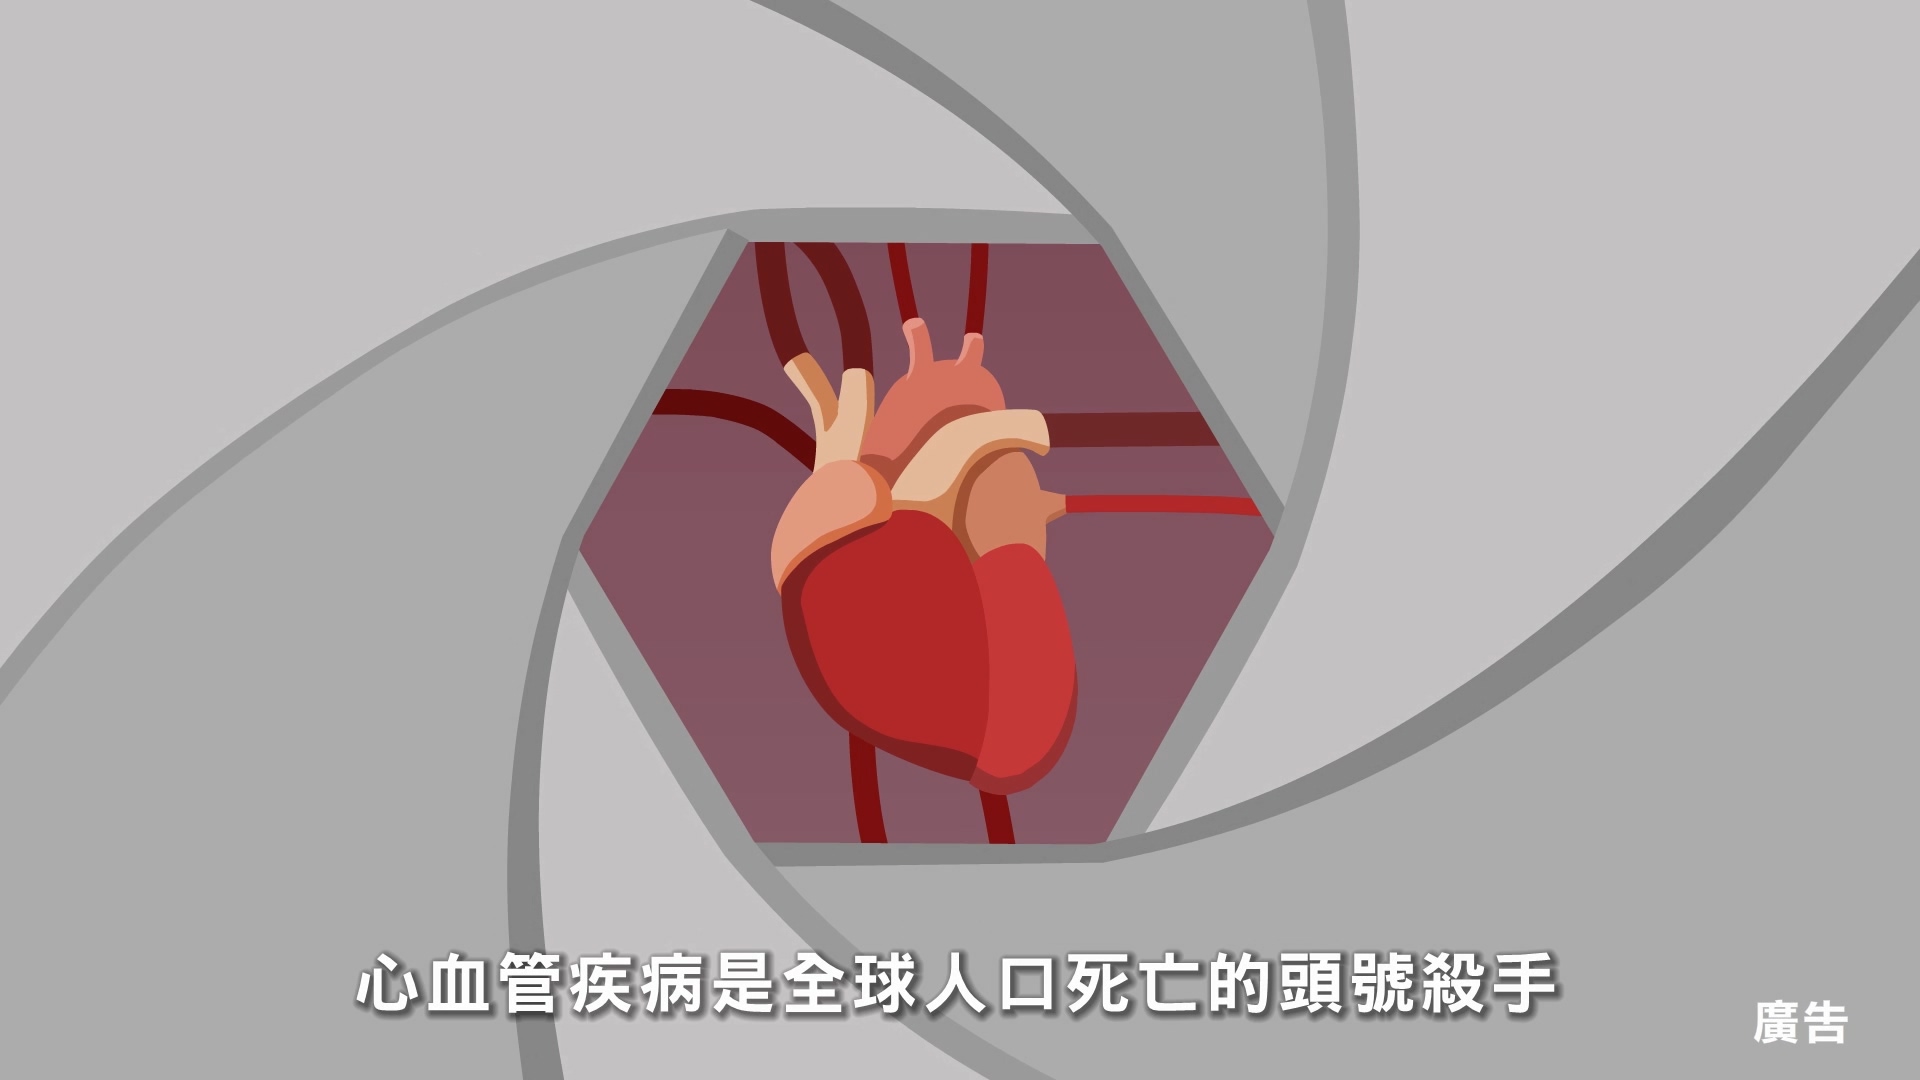 預防心血管疾病 危險因子篇 30秒短片 (國語版)